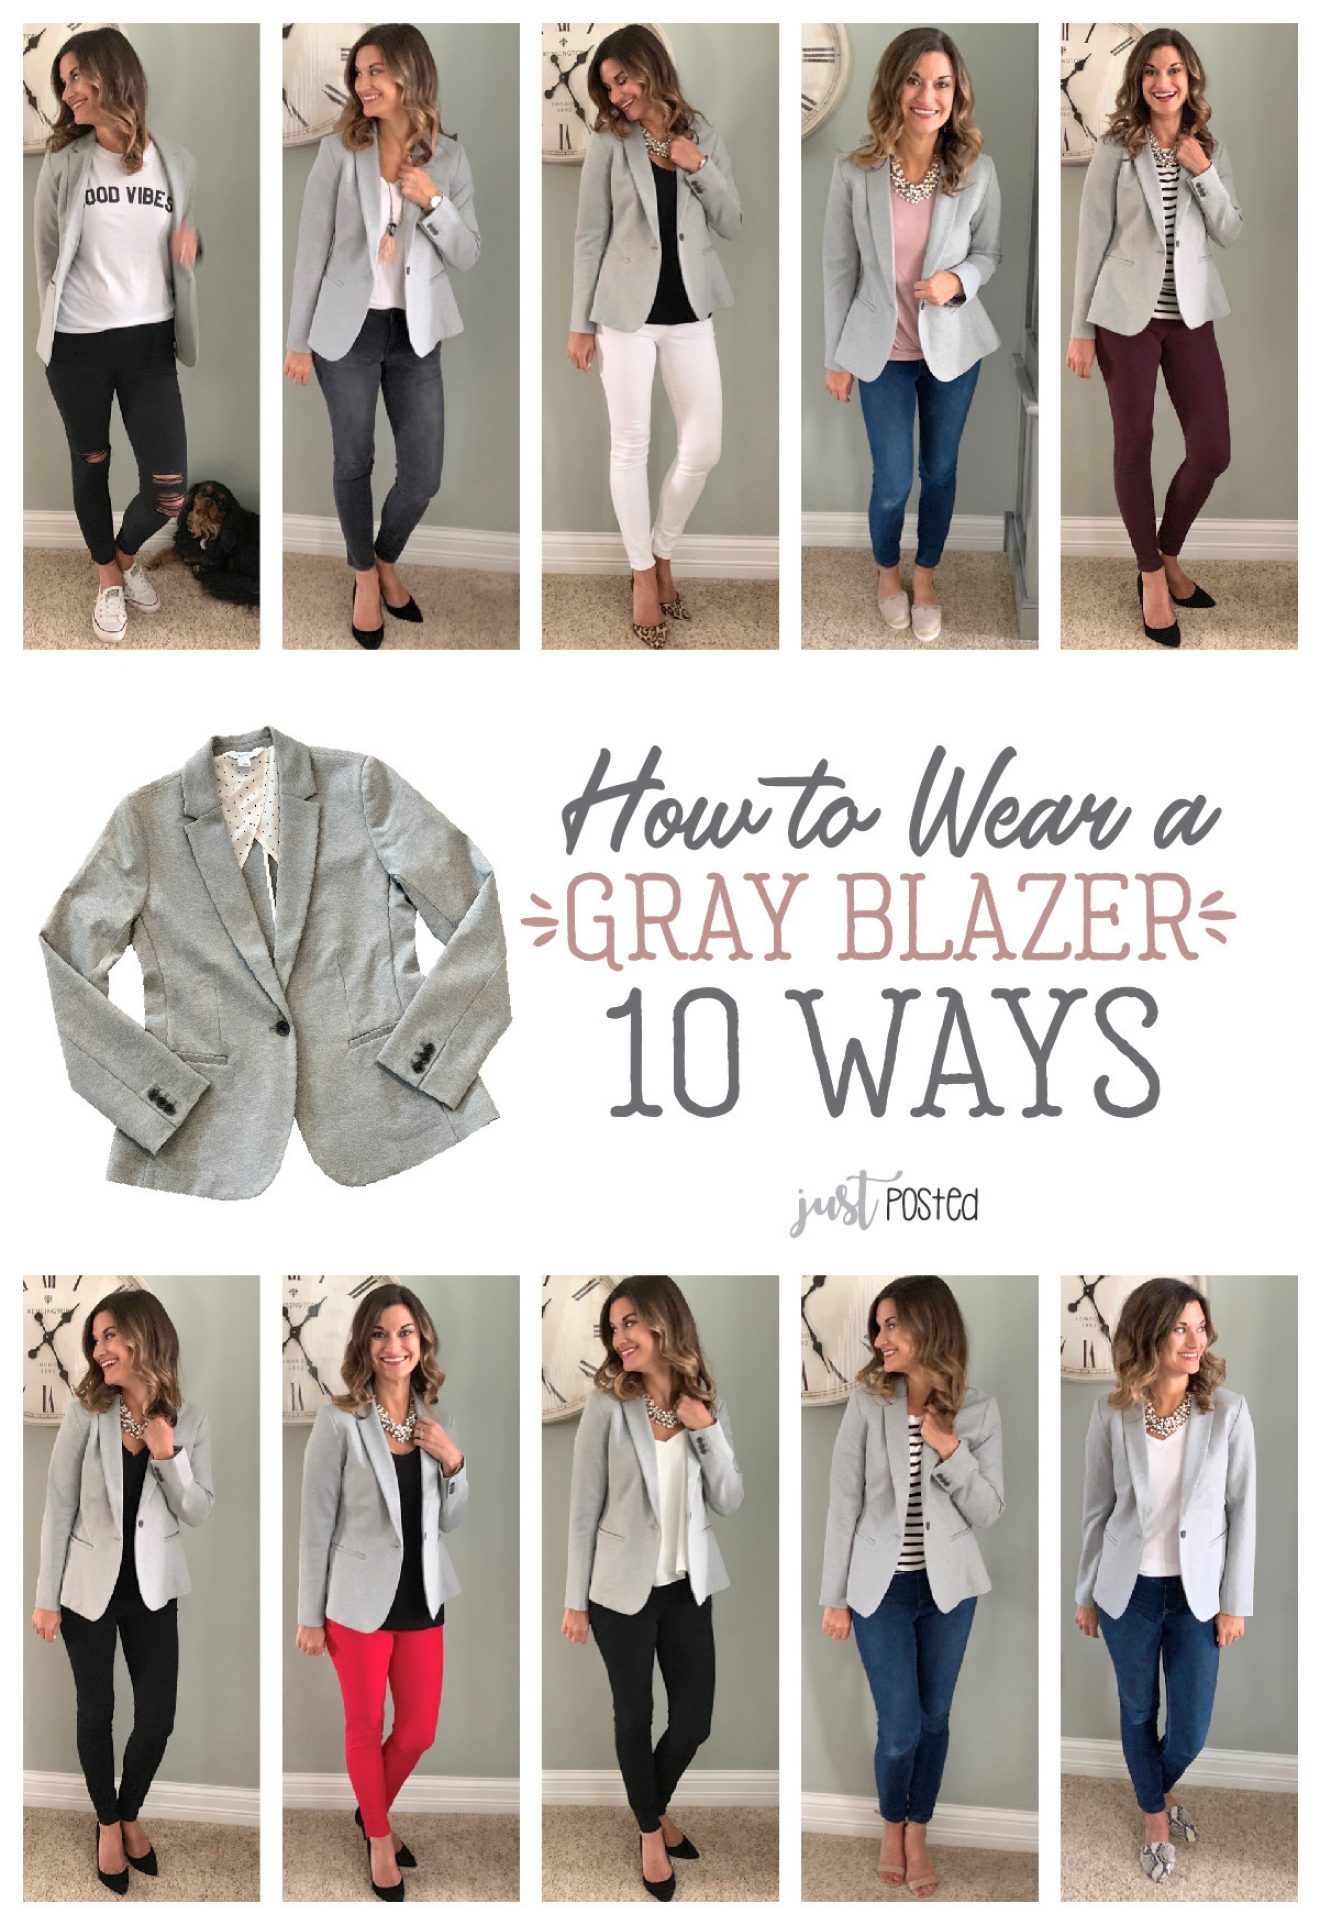 One Grey Blazer, Ten Ways – Just Posted